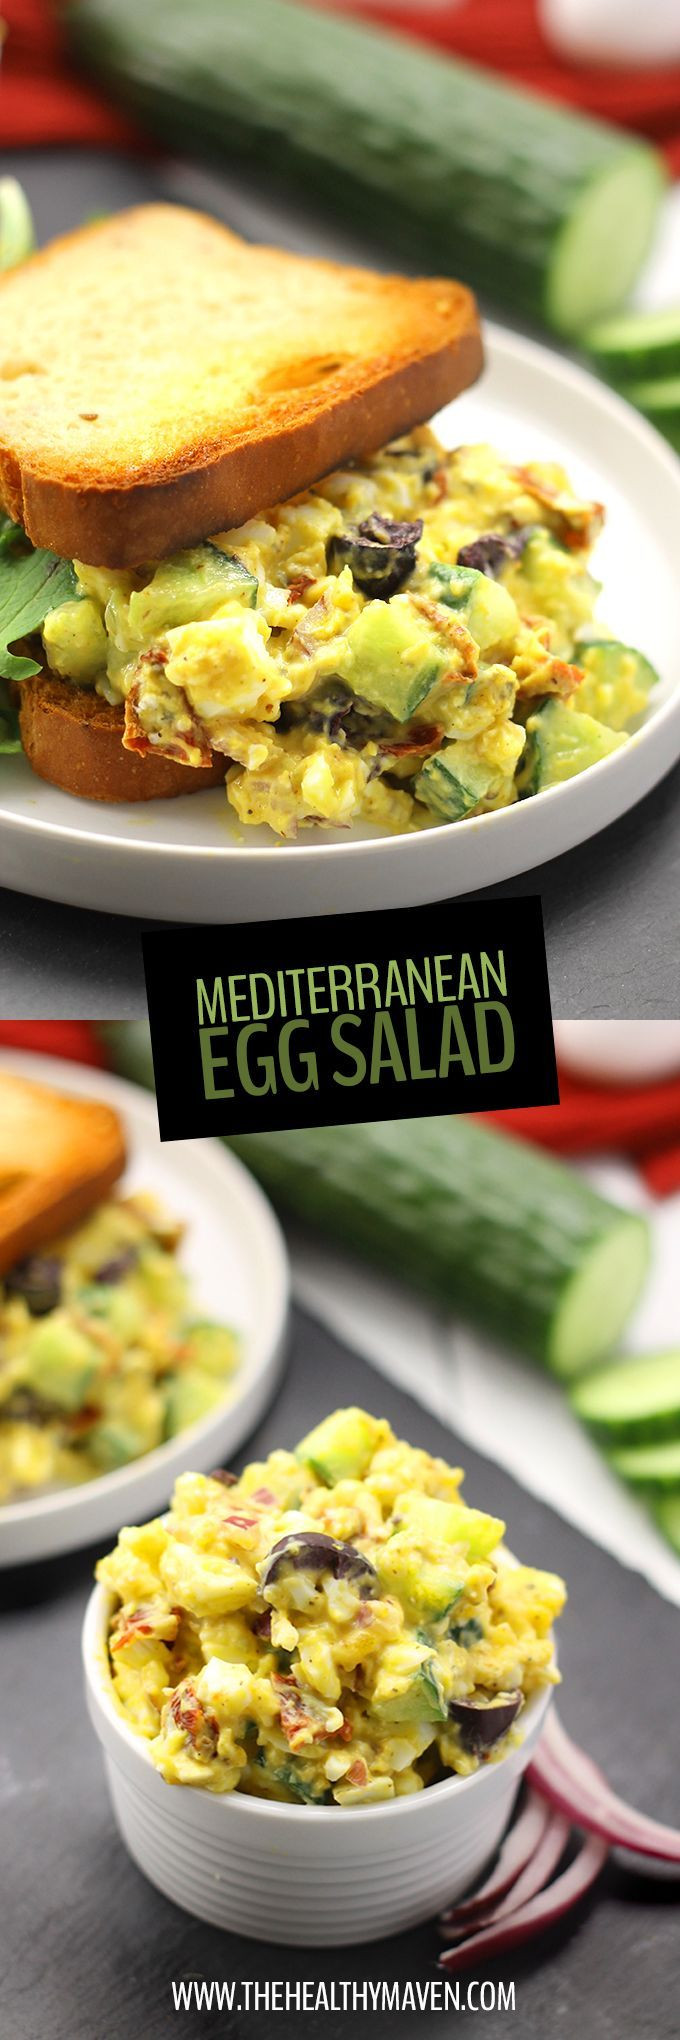 Mediterranean Diet Recipes Breakfast
 25 best ideas about Mediterranean Diet Breakfast on